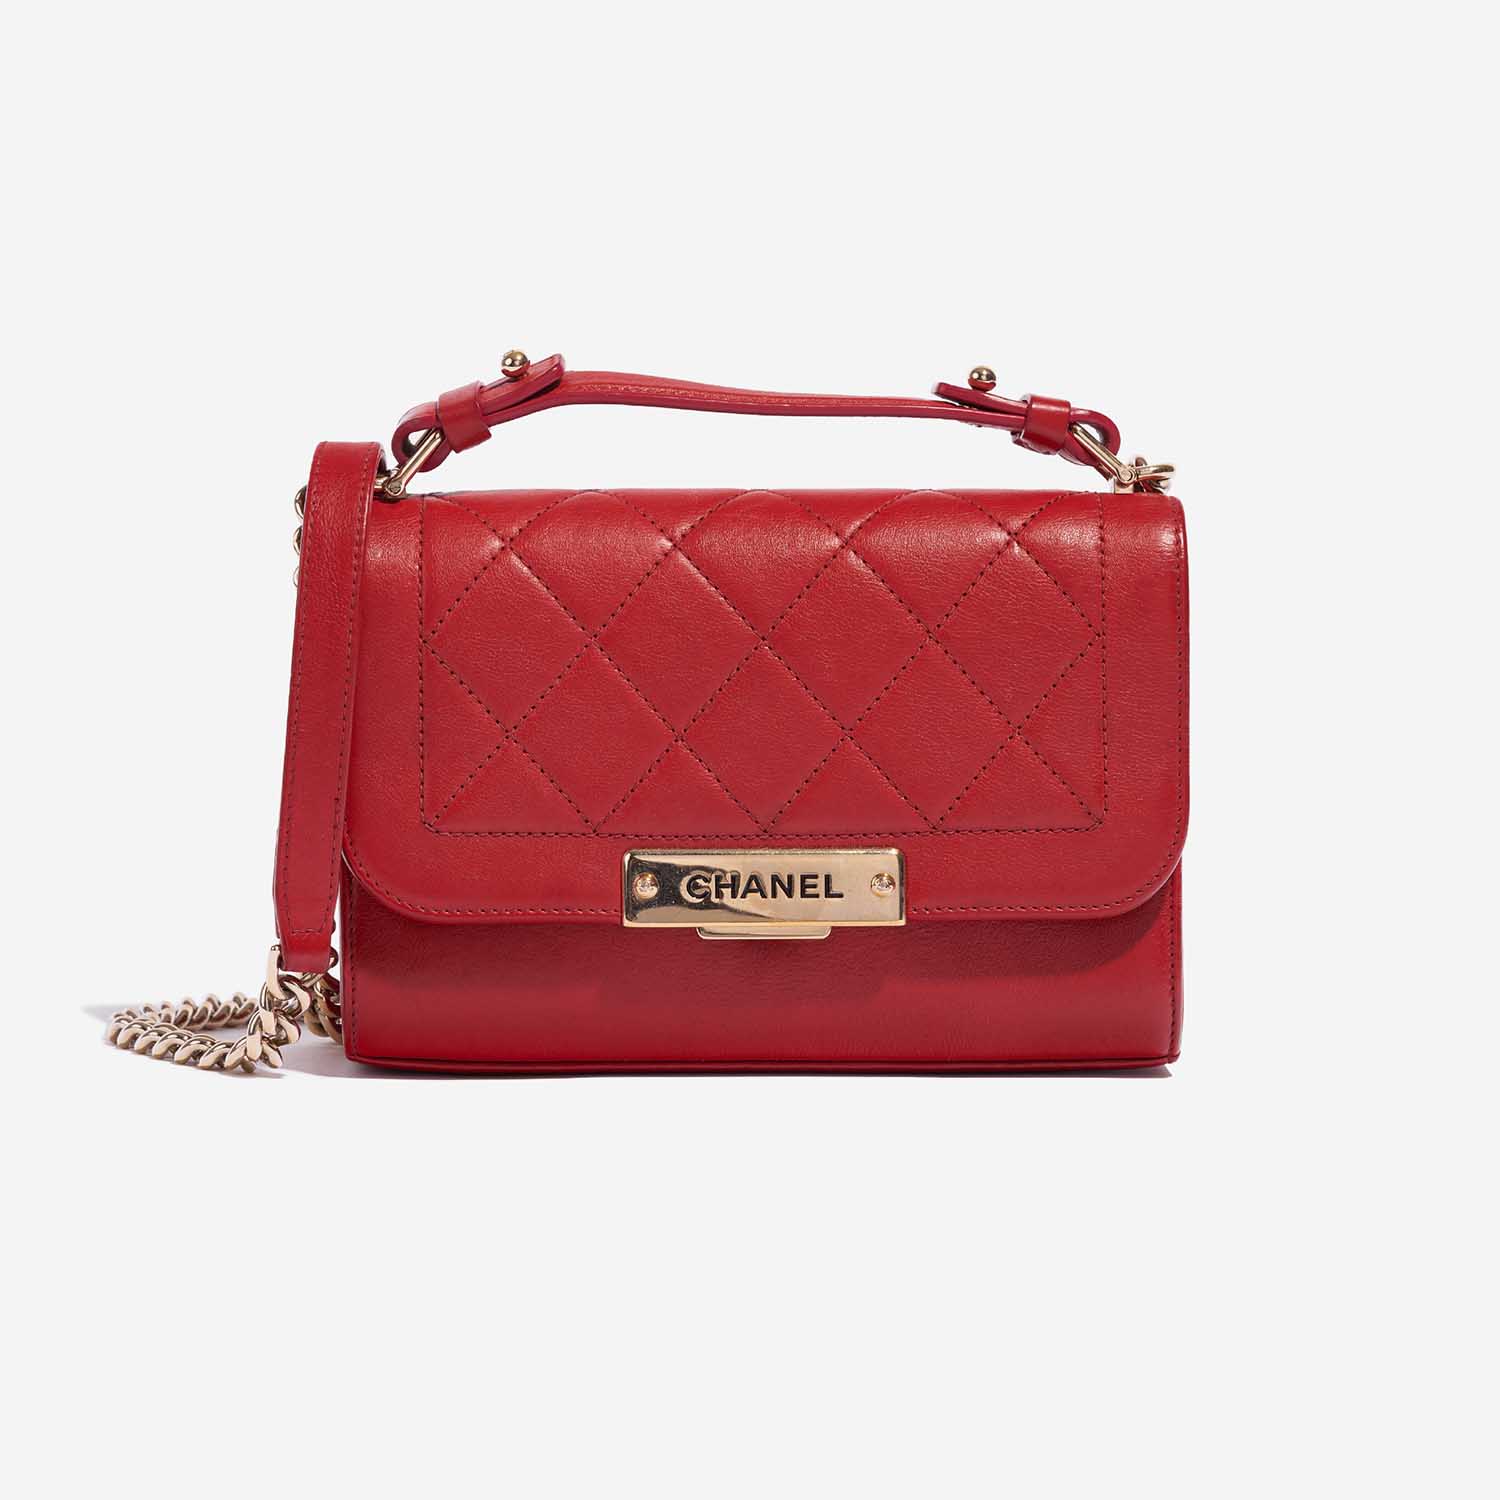 Pre-owned Chanel Tasche Flap Bag Handle Lammleder Red Red Front | Verkaufen Sie Ihre Designer-Tasche auf Saclab.com